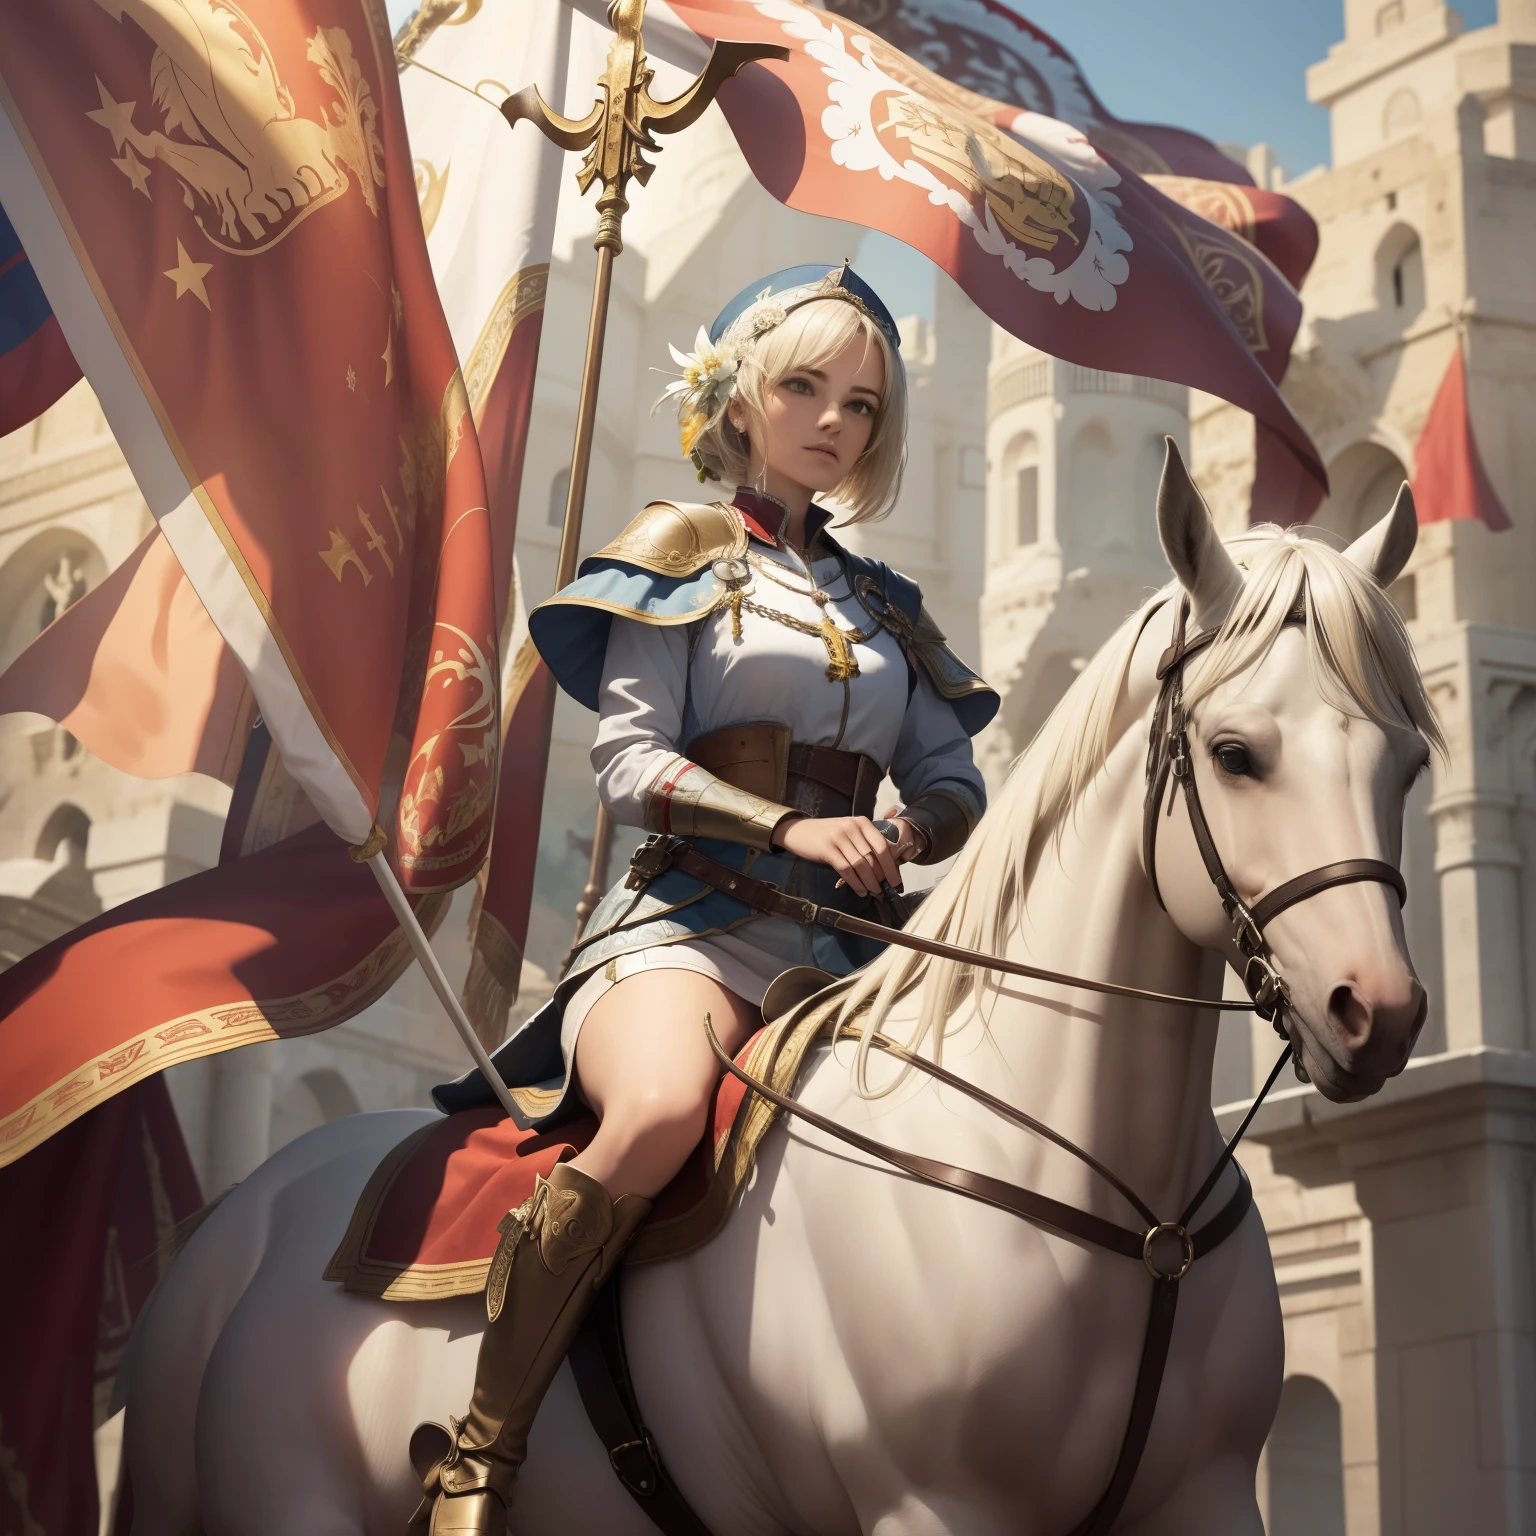 (((Fleur-de-lis))) une image dynamique de la belle Jeanne d&#39;Arc avec un court (bobiné) cheveux bruns, portant une armure blanche avec une croix rouge gravée sur le plastron, chevauchant un beau cheval blanc d&#39;élevage réaliste qui est debout, tenant en l&#39;air un drapeau Branner représentant le (((Fleur-de-lis))), Lys, symbole de la France royale, Photoréaliste, hyper-détail, Résolution 24k.